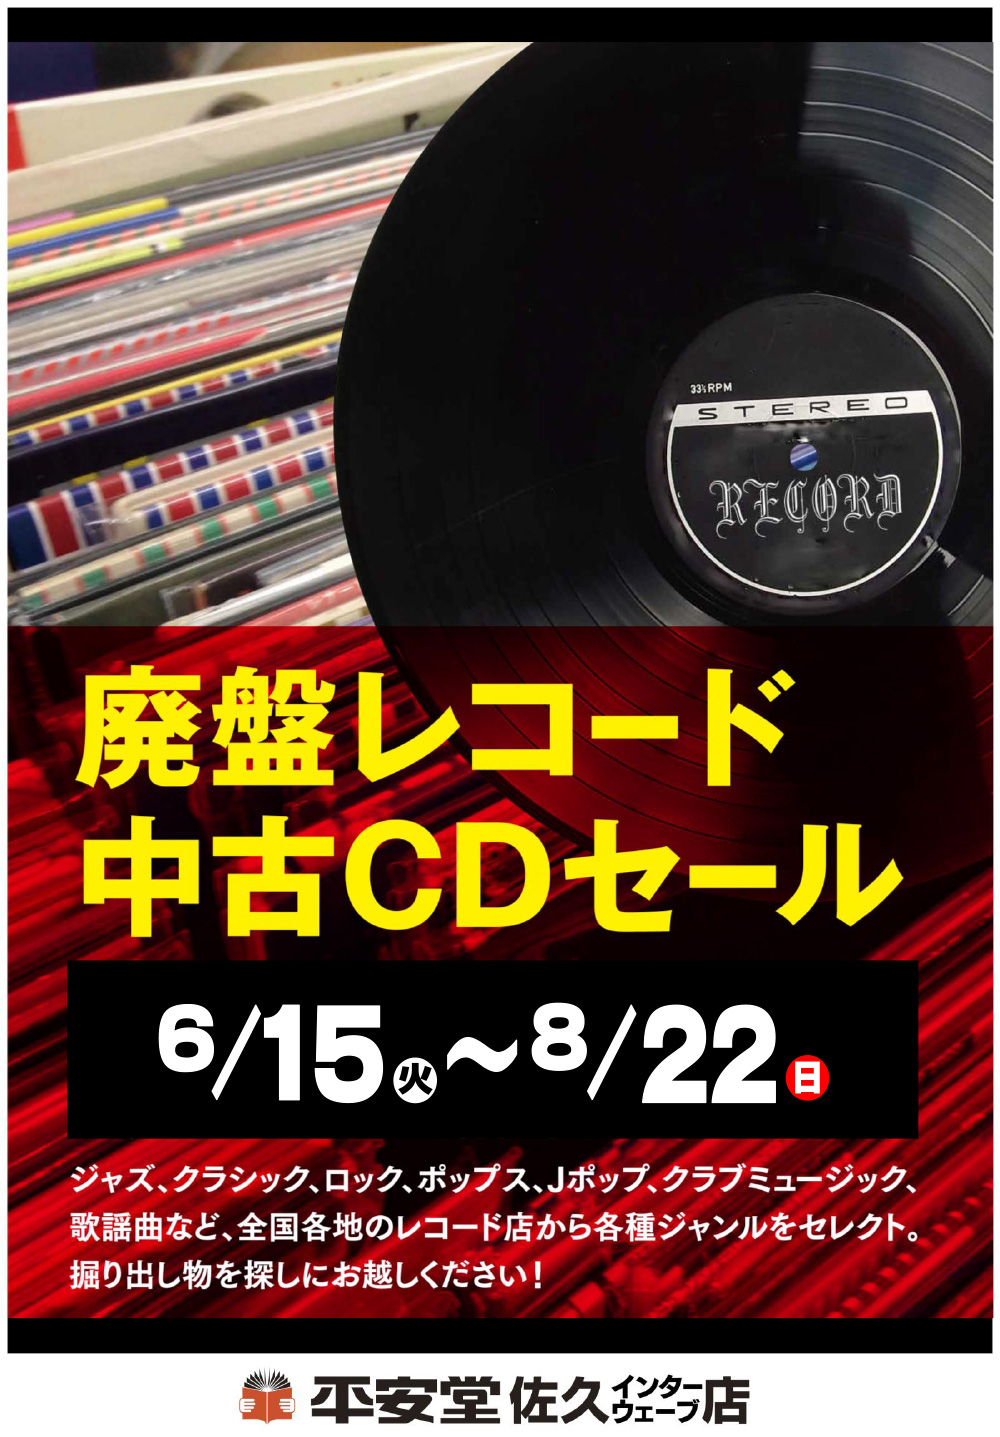 廃盤レコード・中古CDセール | 平安堂